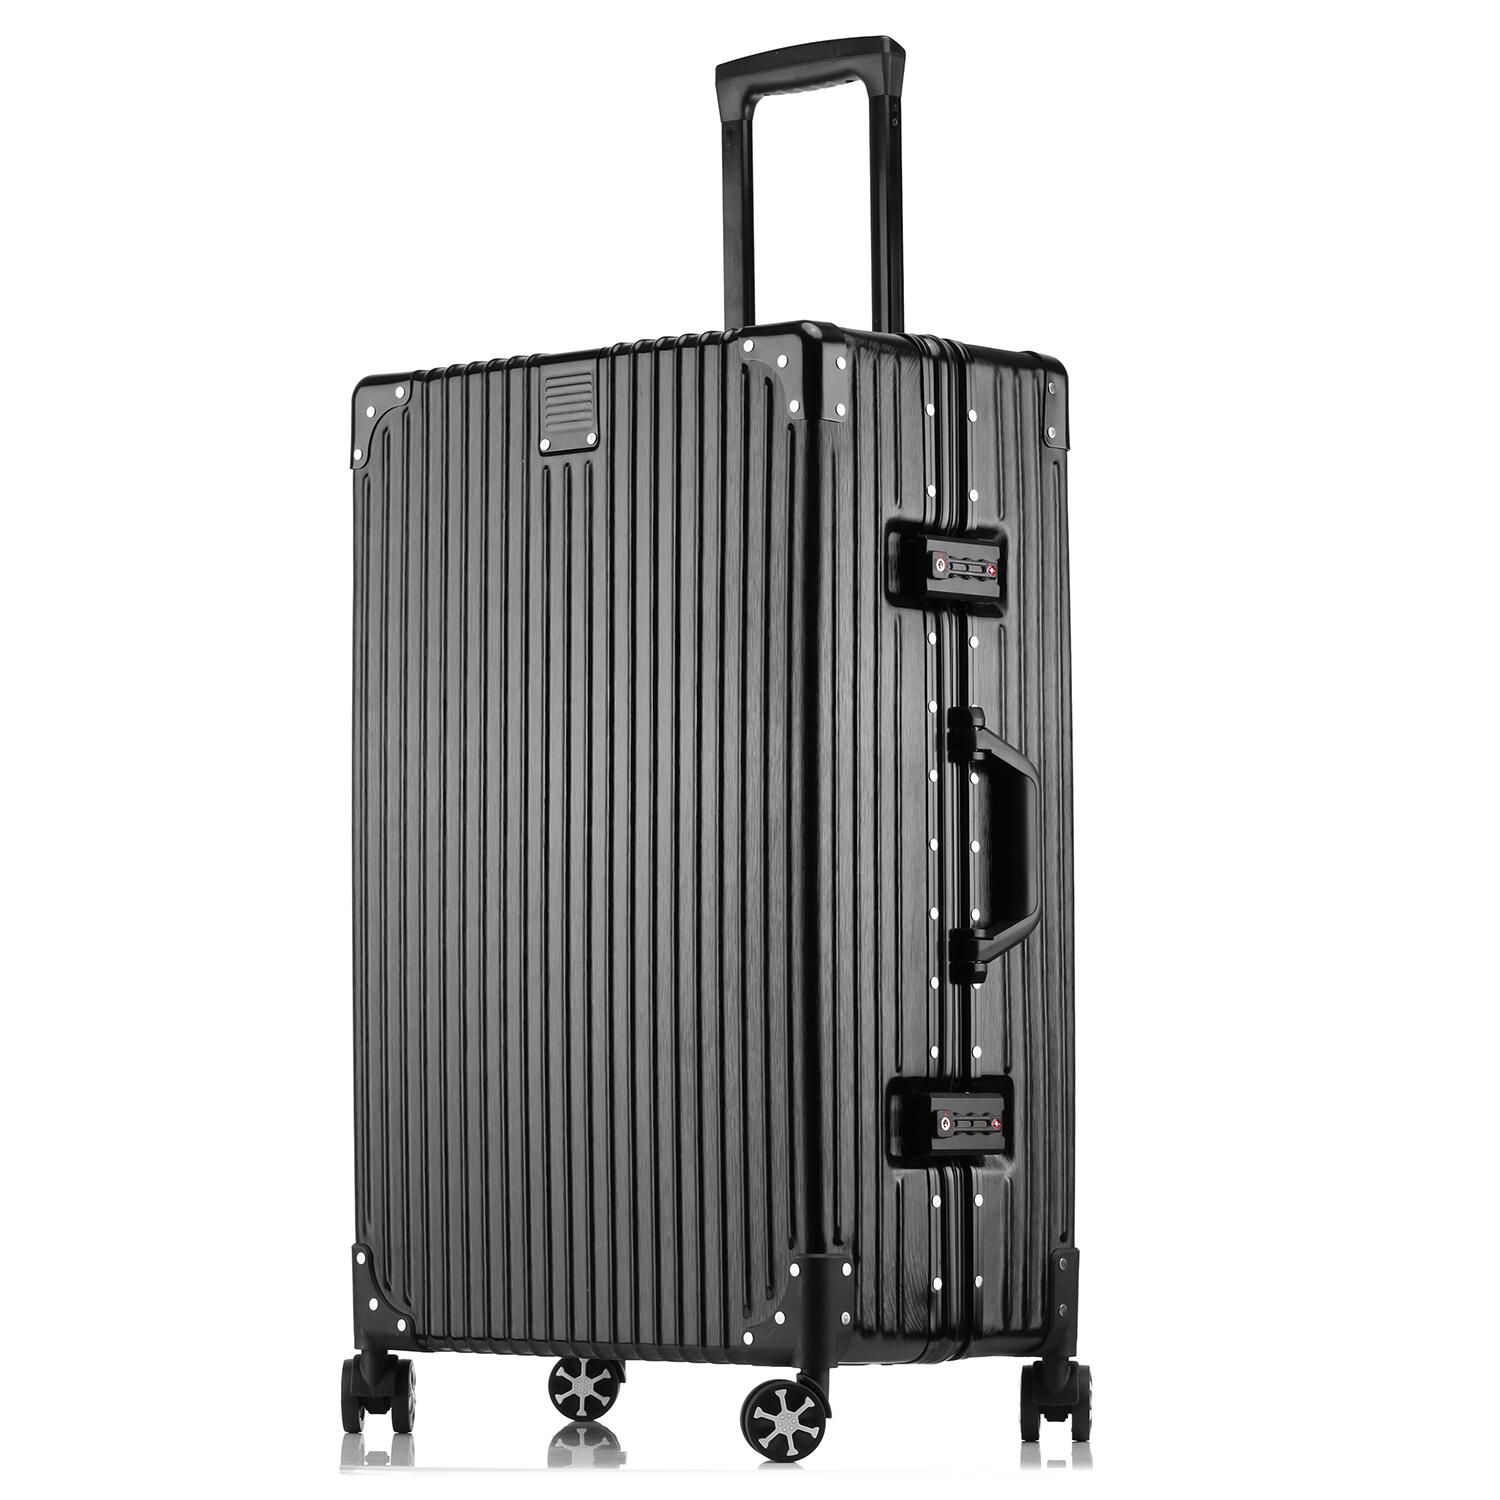 スーツケース 2XLサイズ キャリーバッグ キャリーケース トランクケース トロリーケース アルミフレーム 軽量 ダブル 大型 大容量 空港 旅行カバン 世界基準 TSAロック ダイヤルロック 送料無料